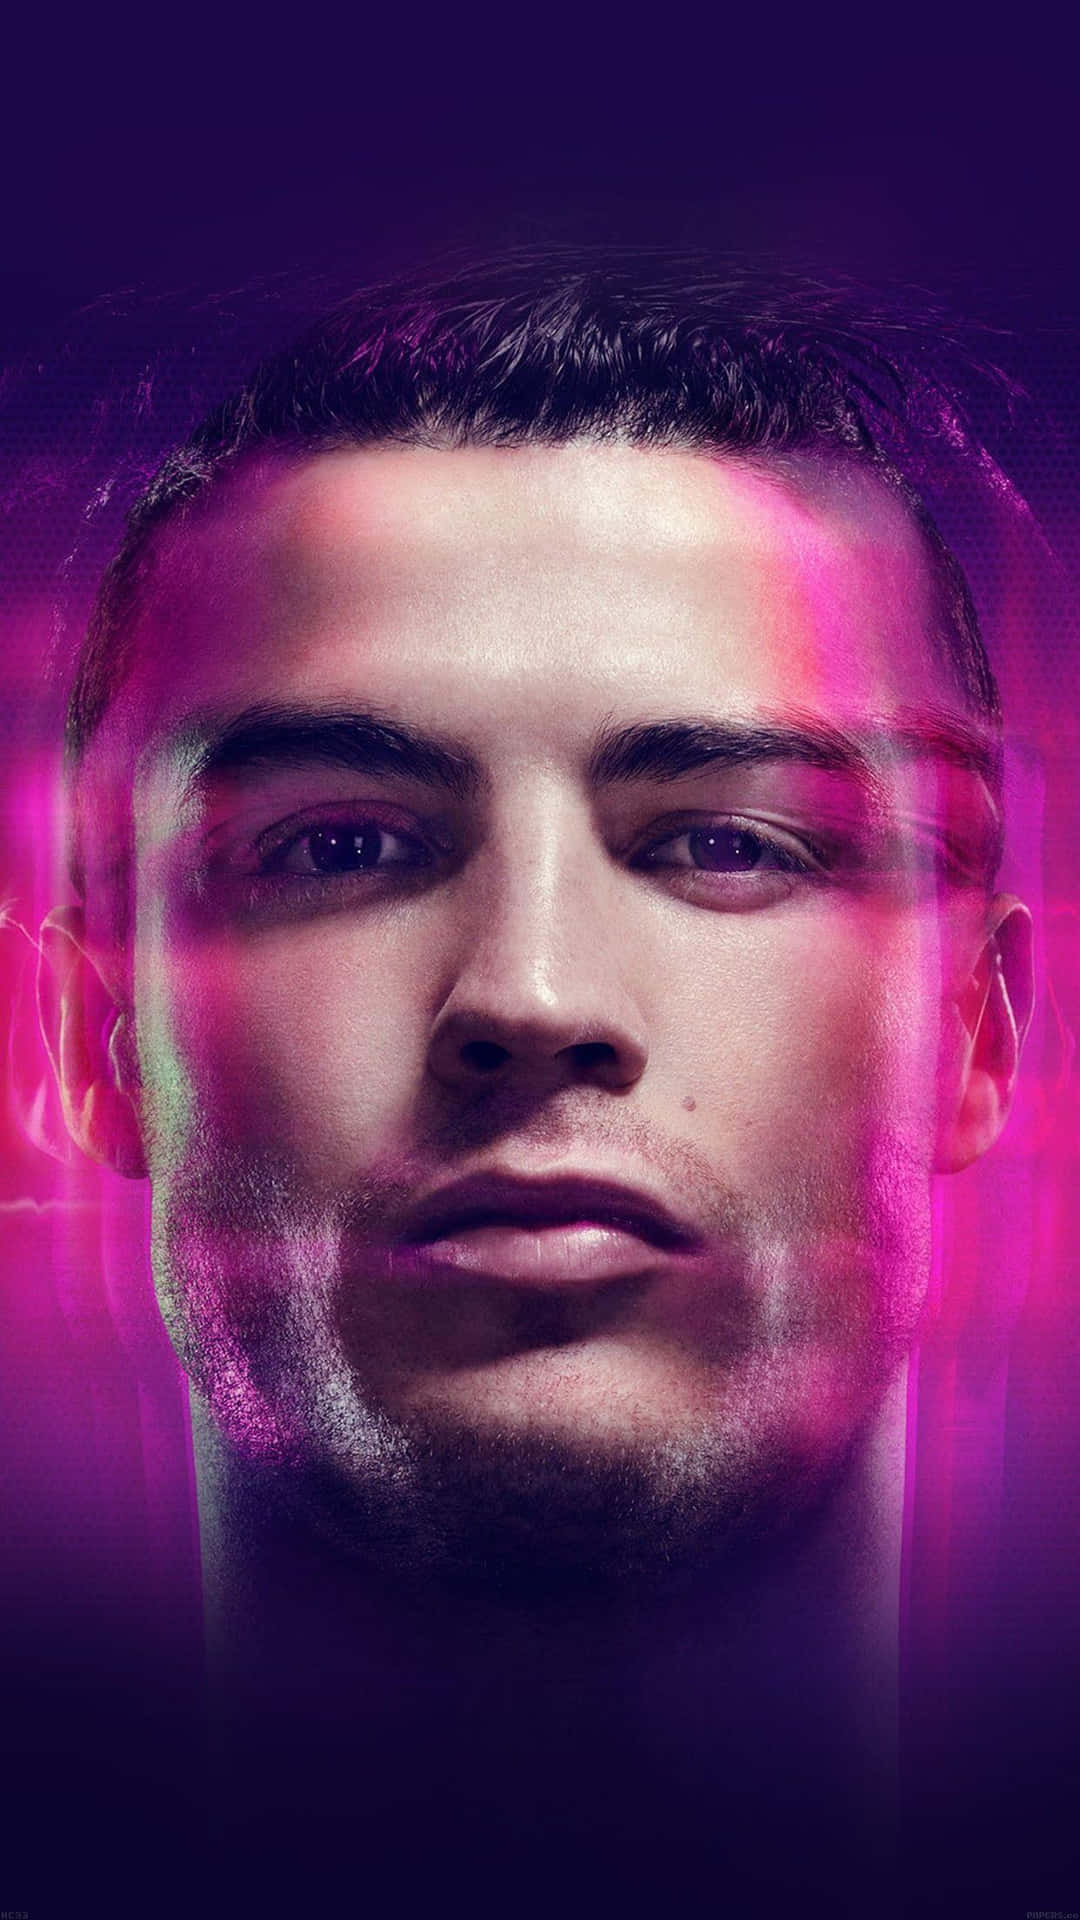 Professionel fodboldstjerne Cristiano Ronaldo bringer spænding og energi til spillet. Wallpaper